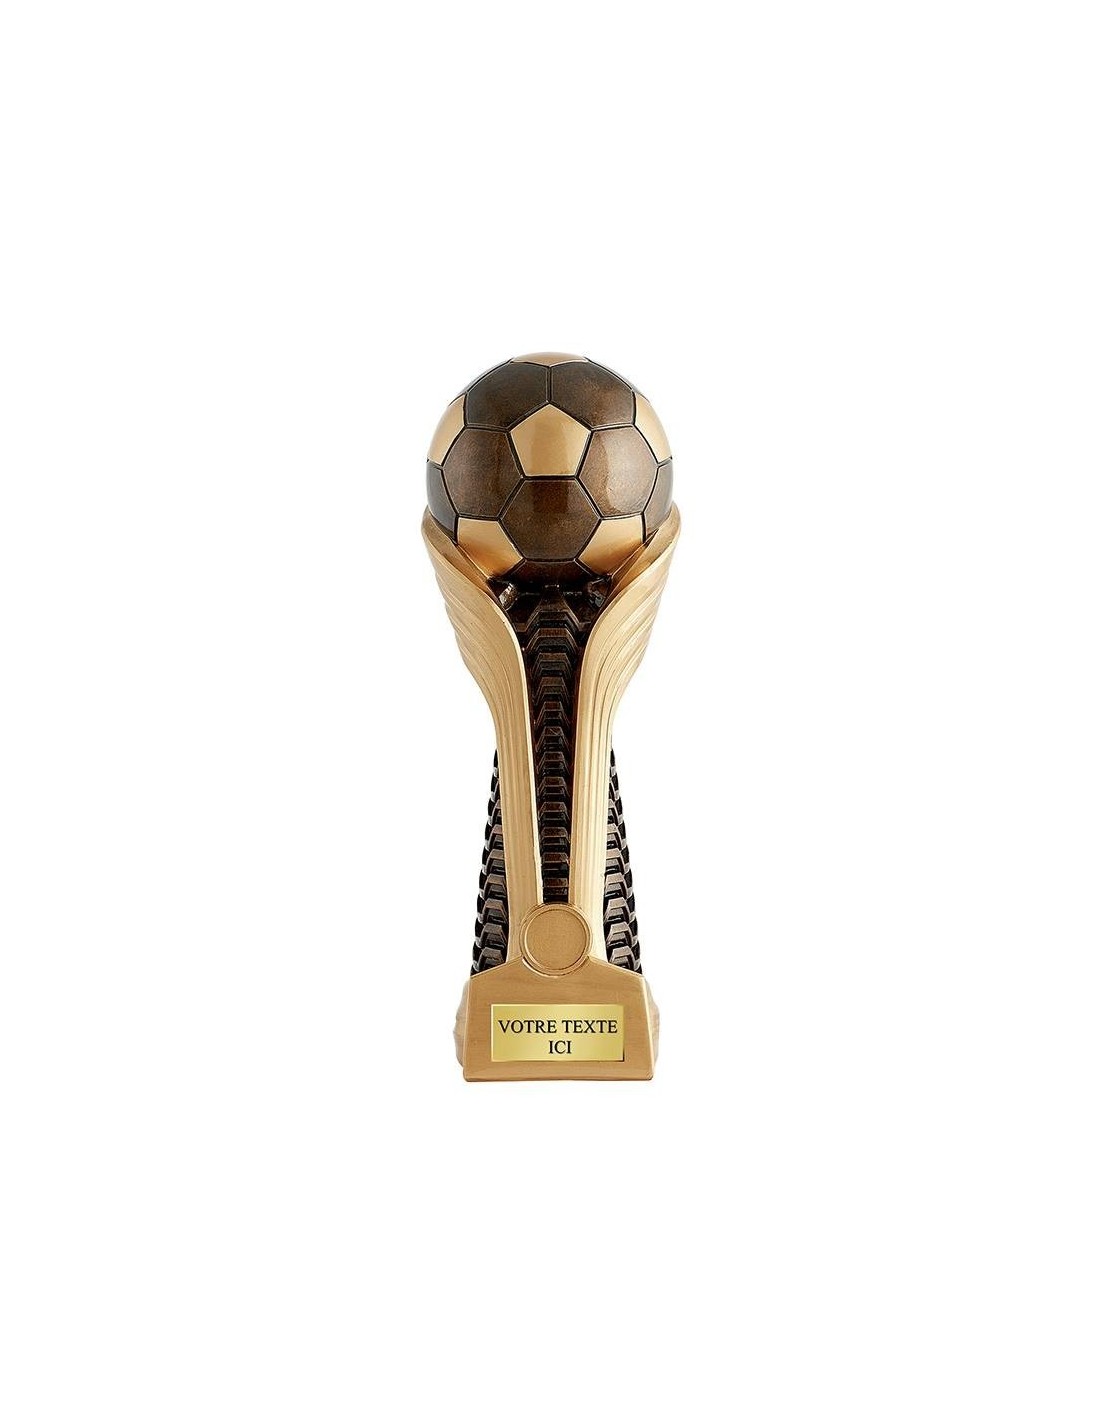 Achetez La Récompense Parfaite : Trophée Ballon De Foot - Cp4336a